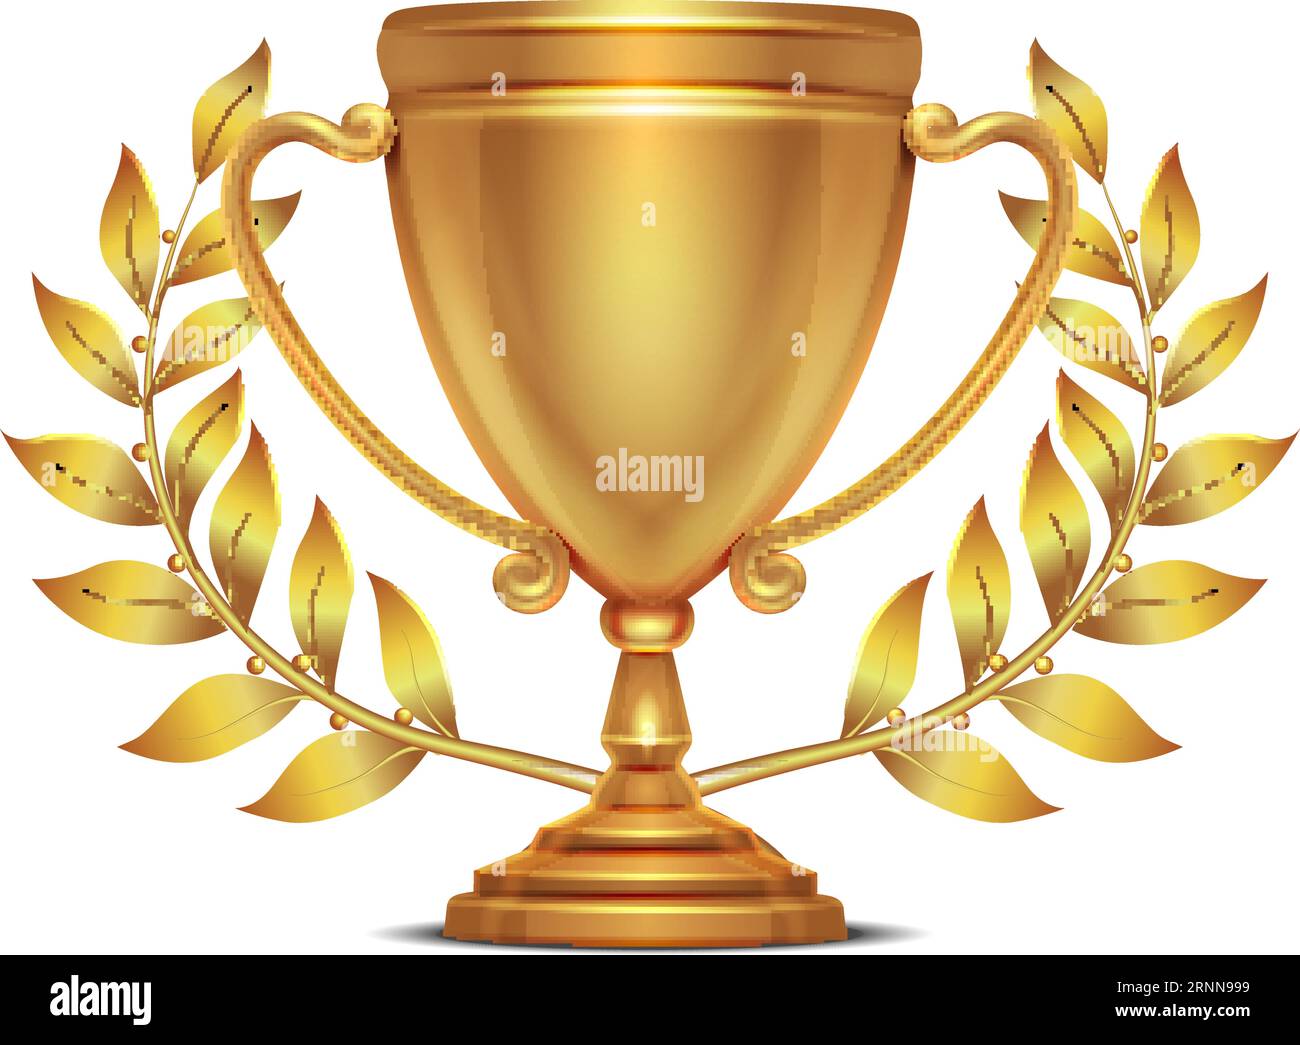 Coppa del trofeo con corona dorata. Emblema realistico di alta qualità Illustrazione Vettoriale